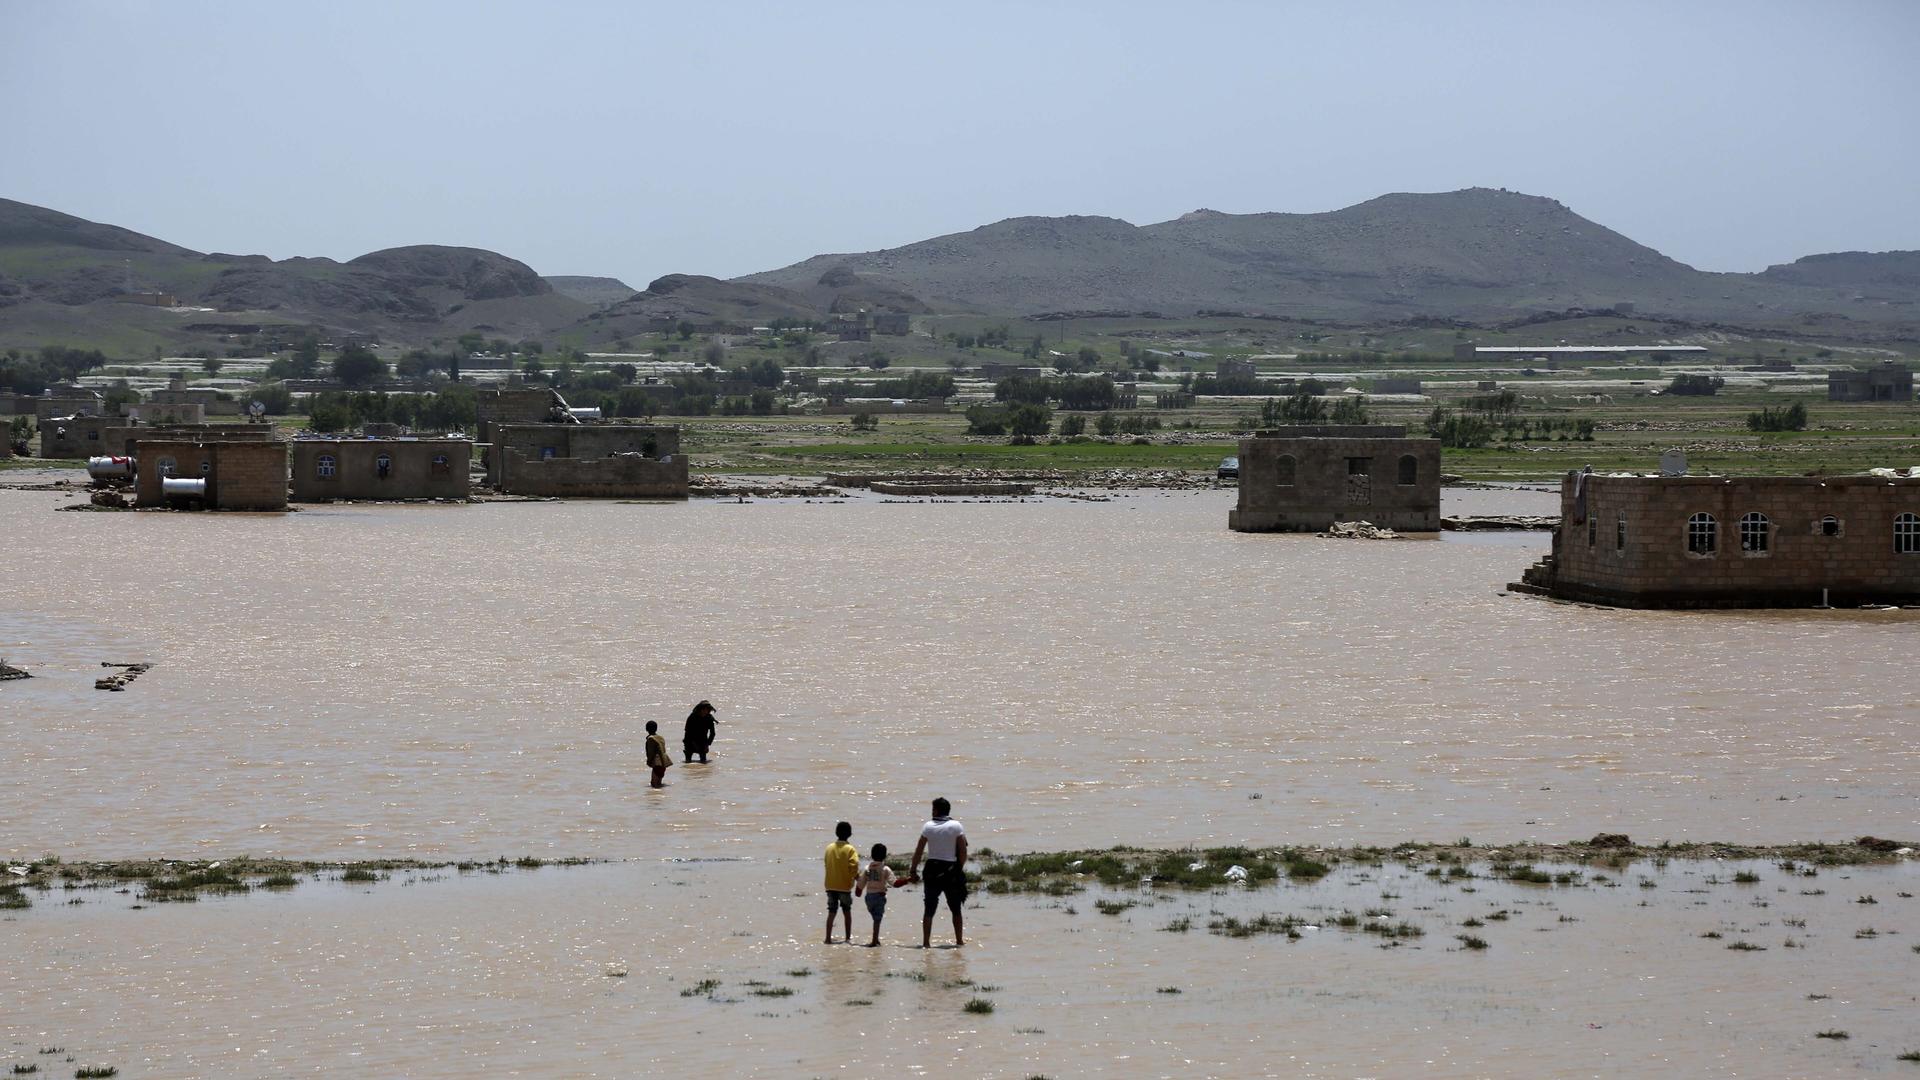 Blick über weites Land, welches durch Regen überschwemmt wurde. Vereinzelt stehen Menschen in der Landschaft.